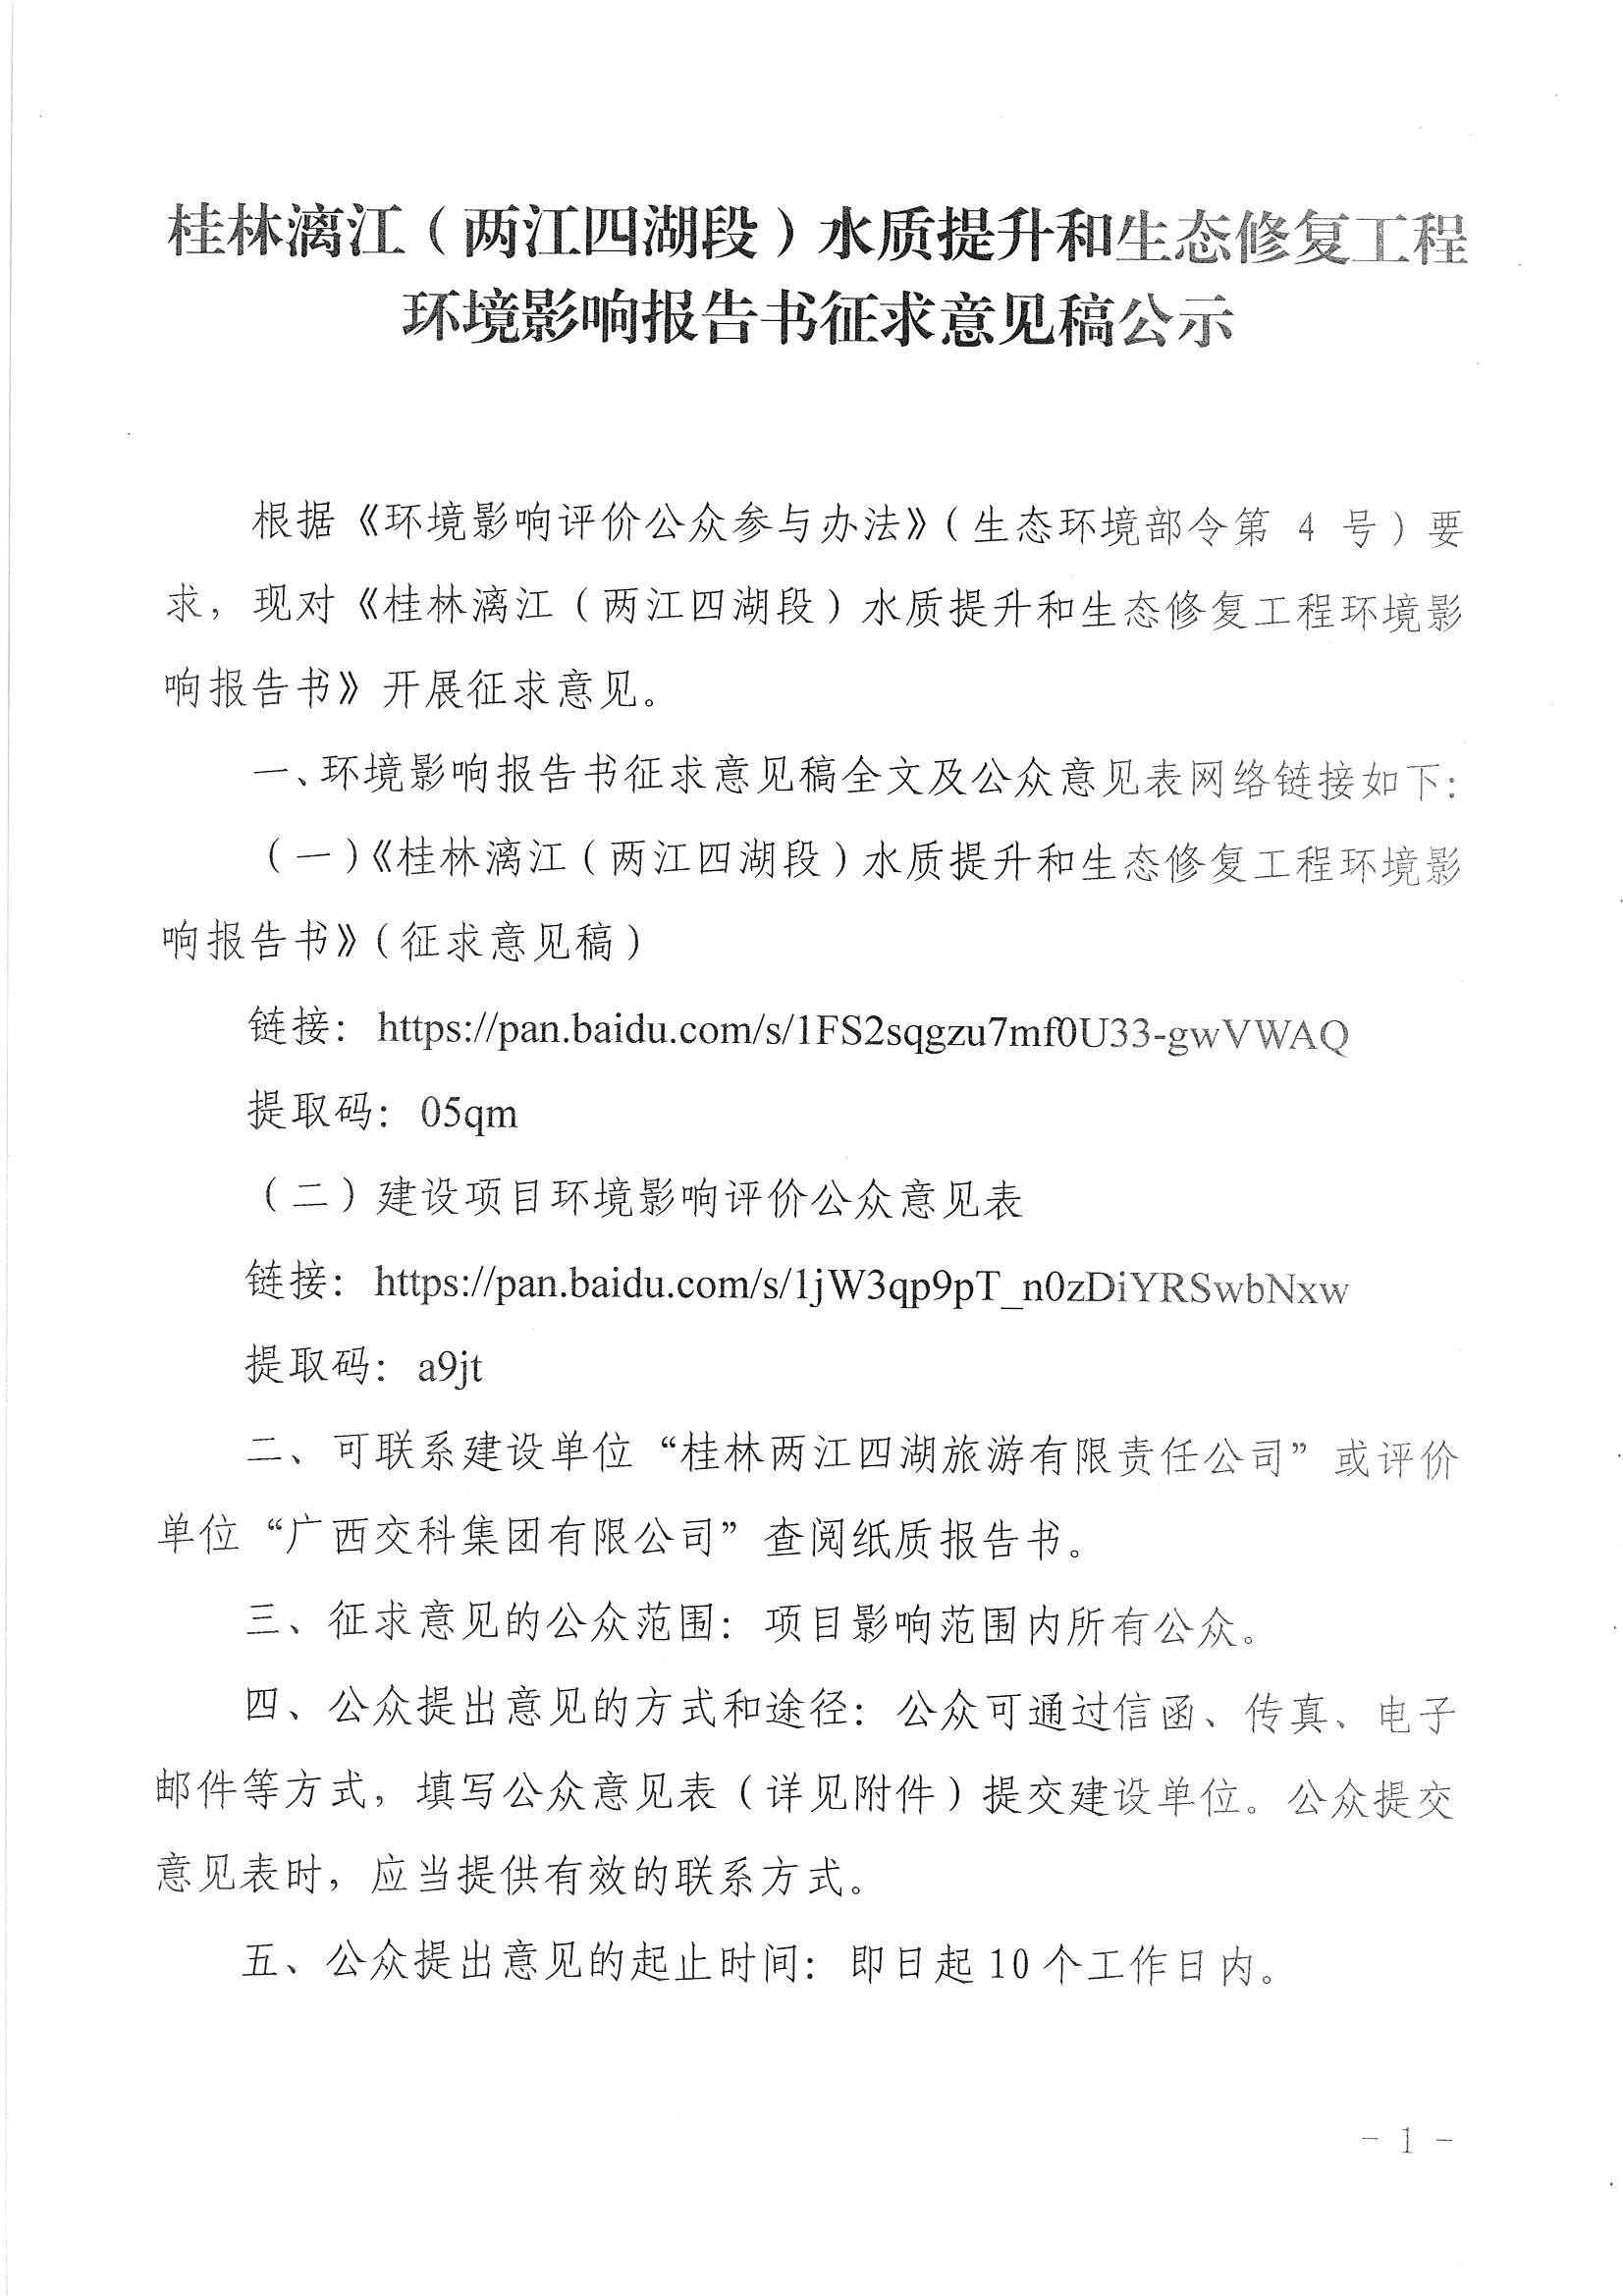 桂林漓江（两江四湖段）水质提升和生态修复工程环境影响报告书征求意见稿公示